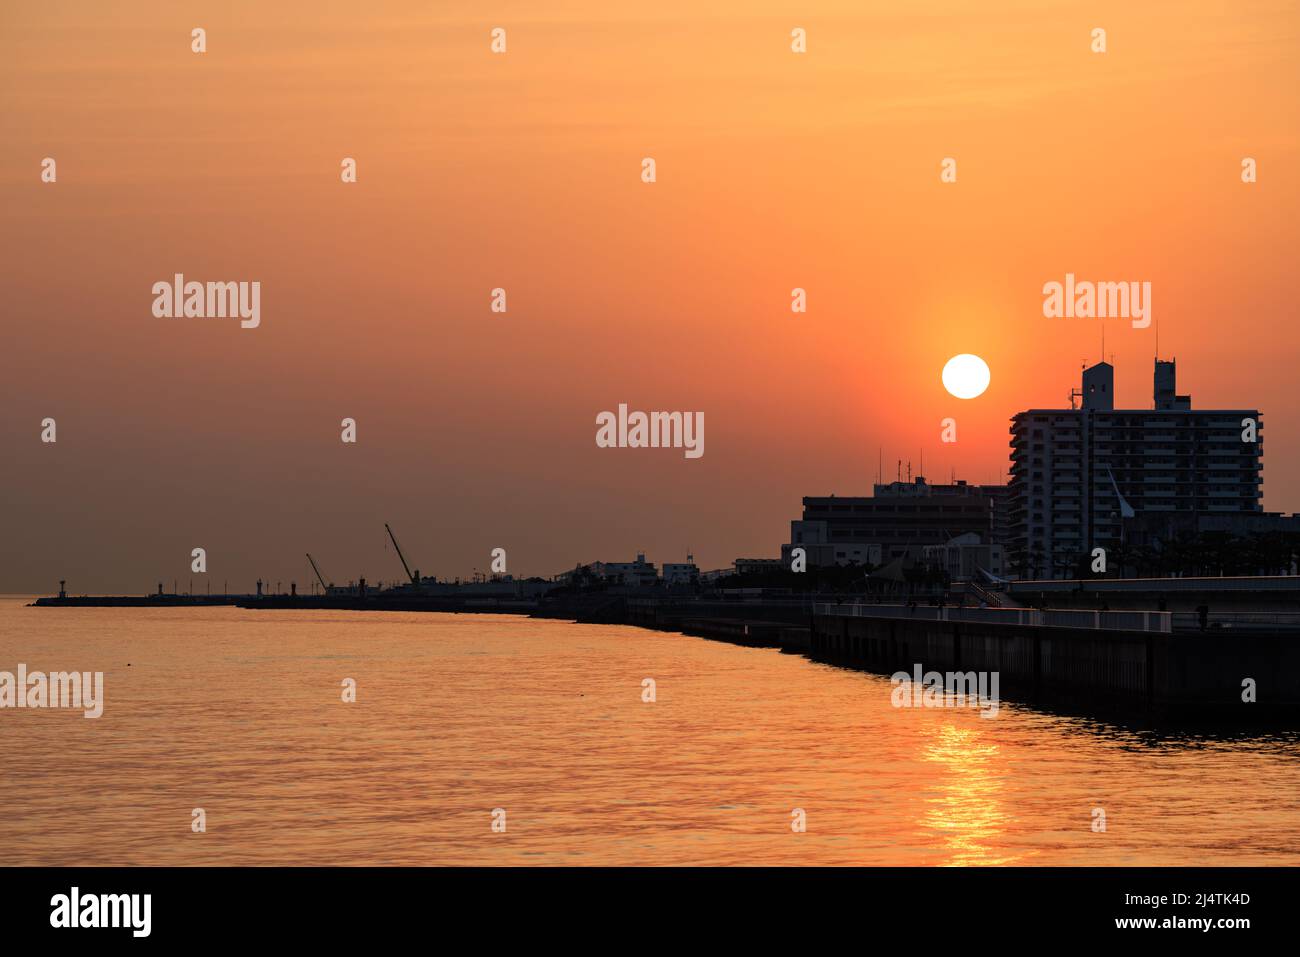 Le soleil se couche à travers la brume orange sur les bâtiments silhouettés sur la côte Banque D'Images